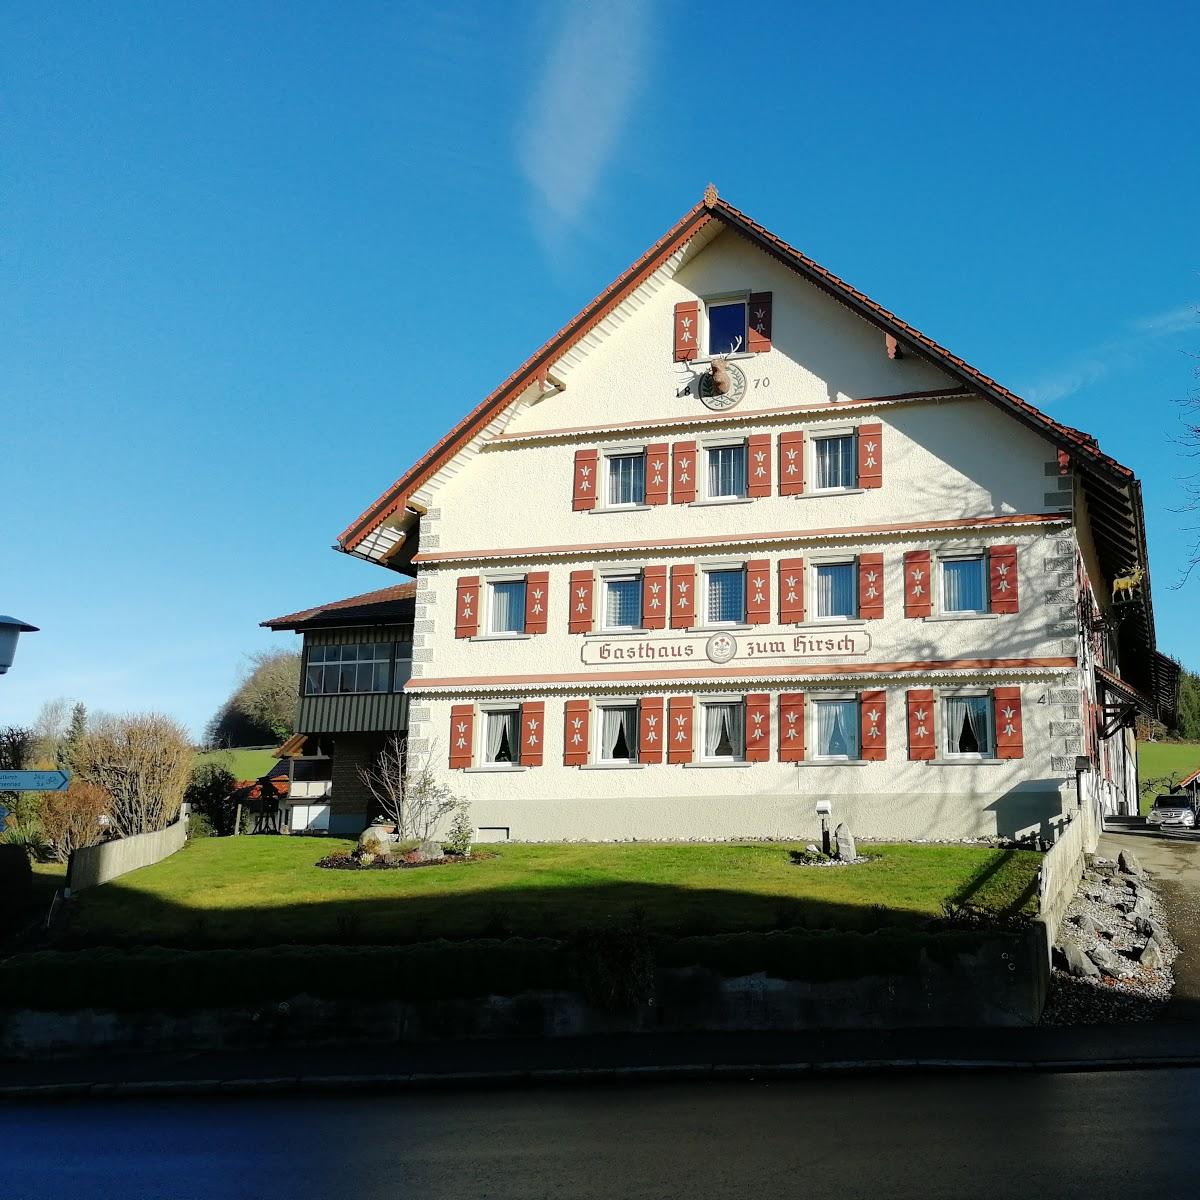 Restaurant "Gasthof Hirsch" in Wangen im Allgäu